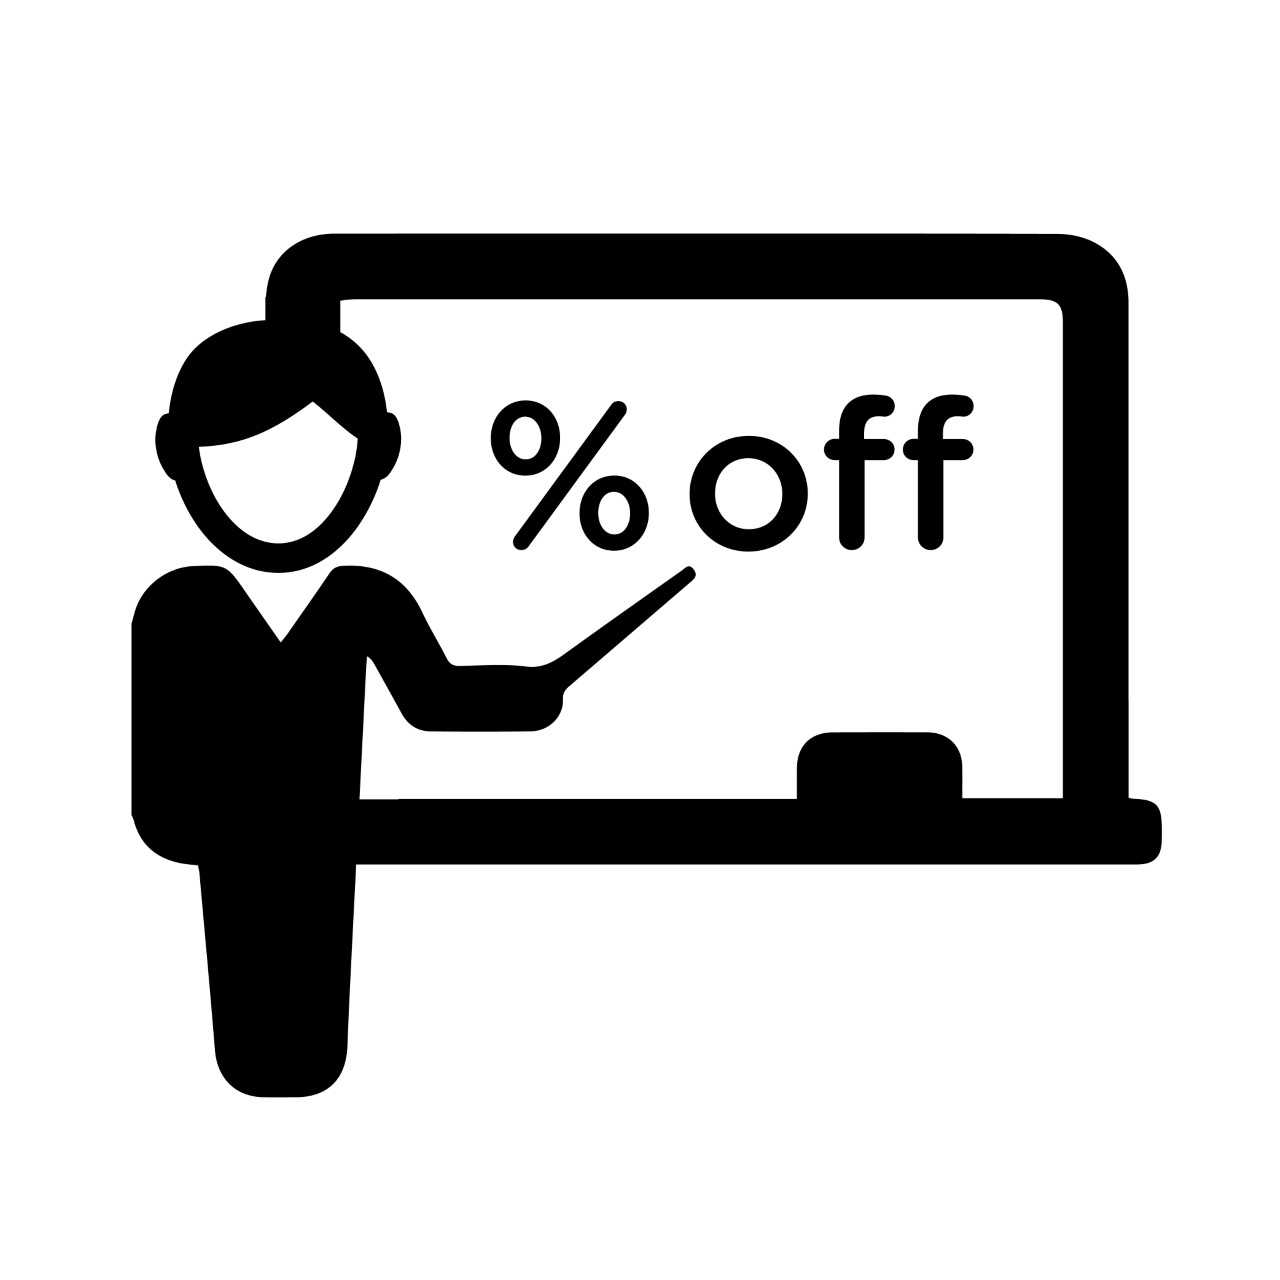 Teacher Logo for Discount Program 